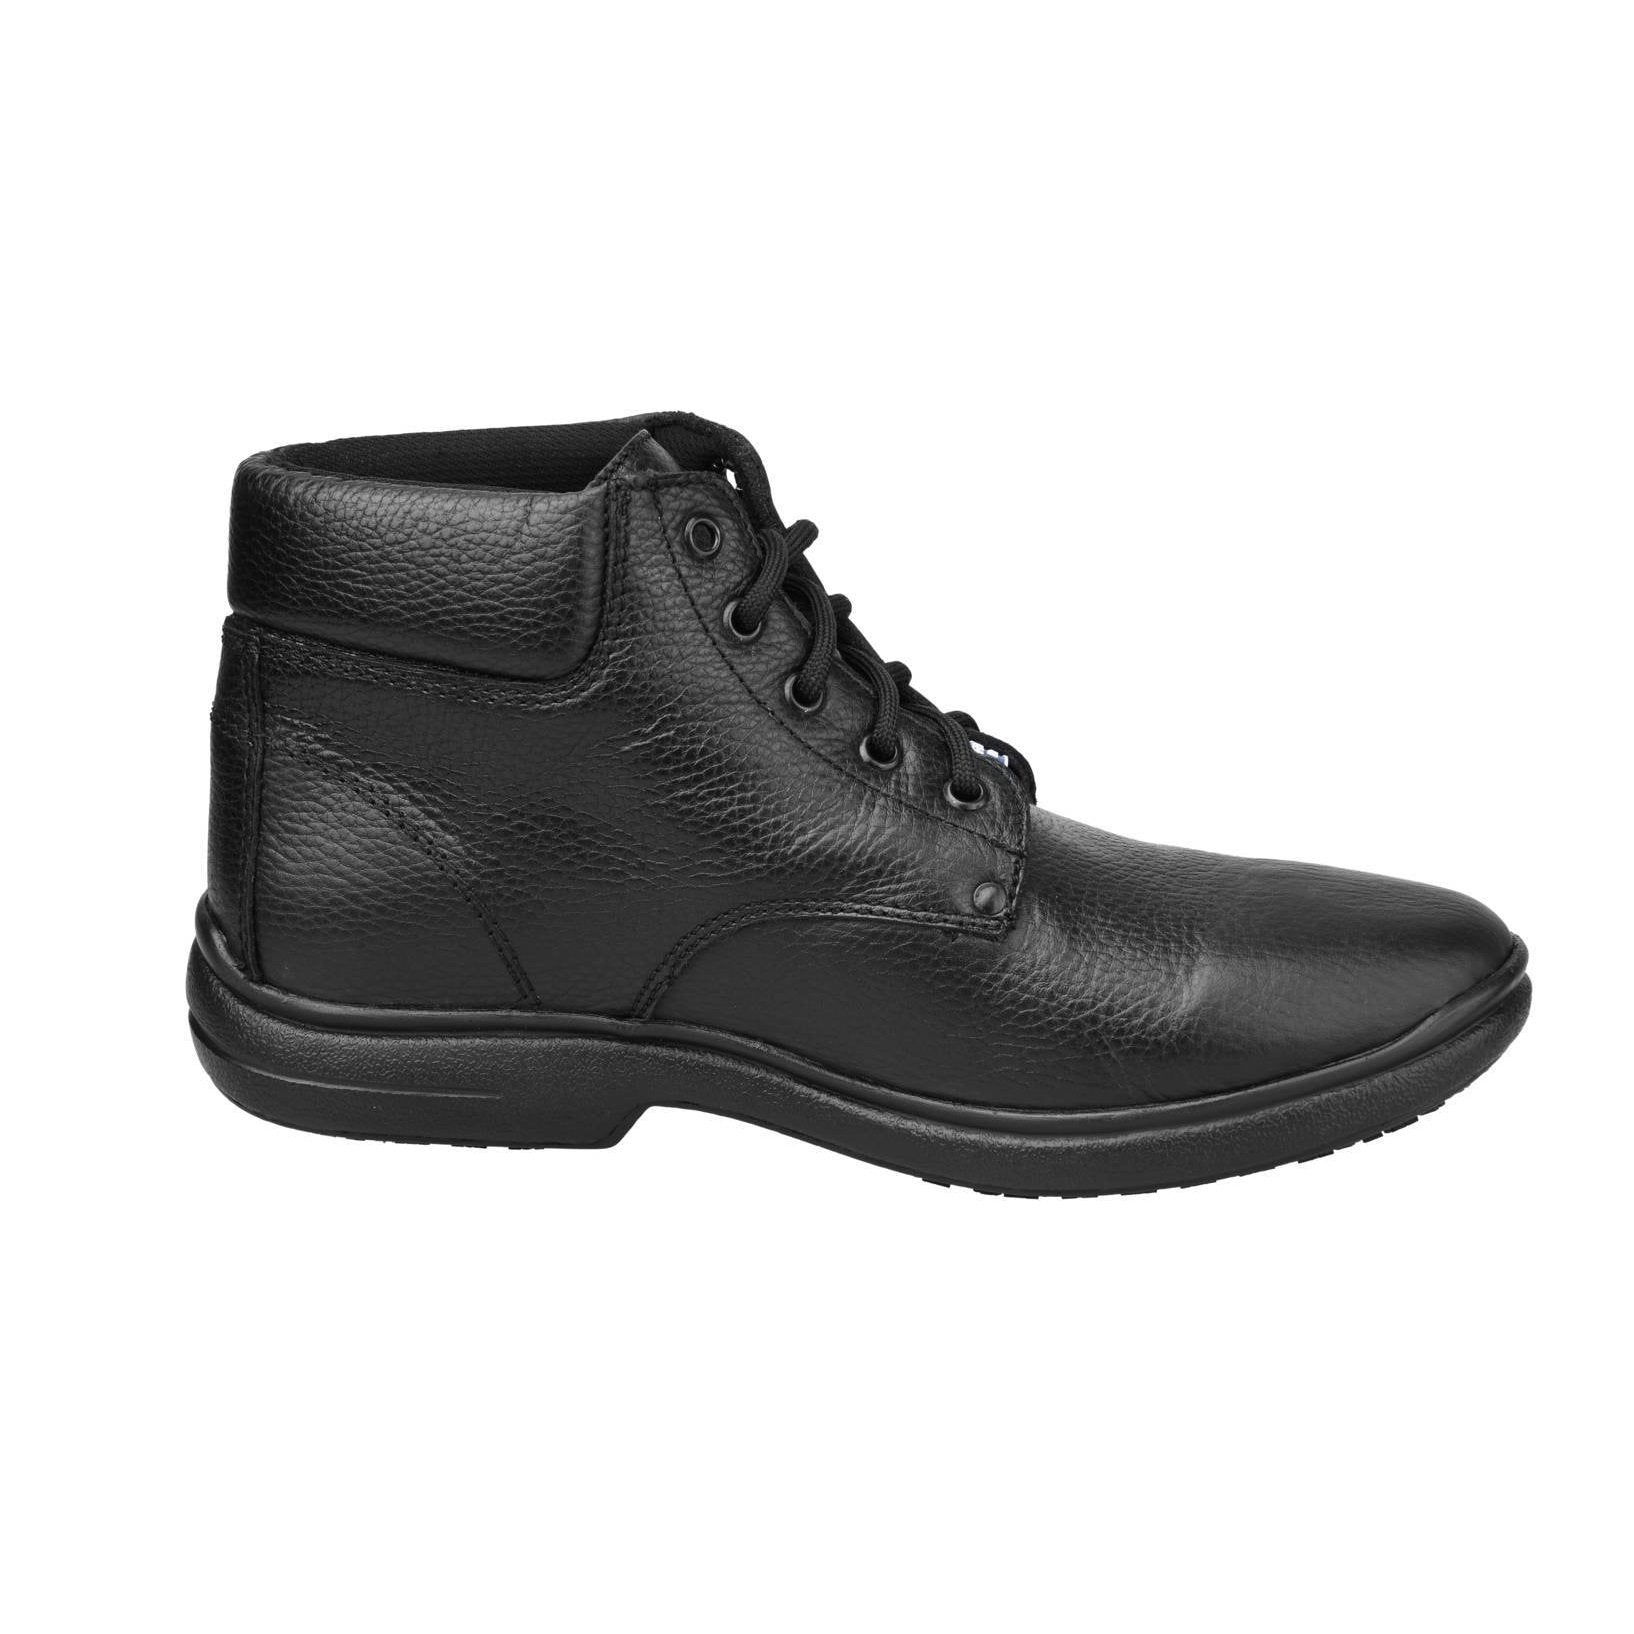 Men's Work Boots - Non Slip - Black Work Boots - Fortal - 6" Work Boots - Black 6in Work Boots